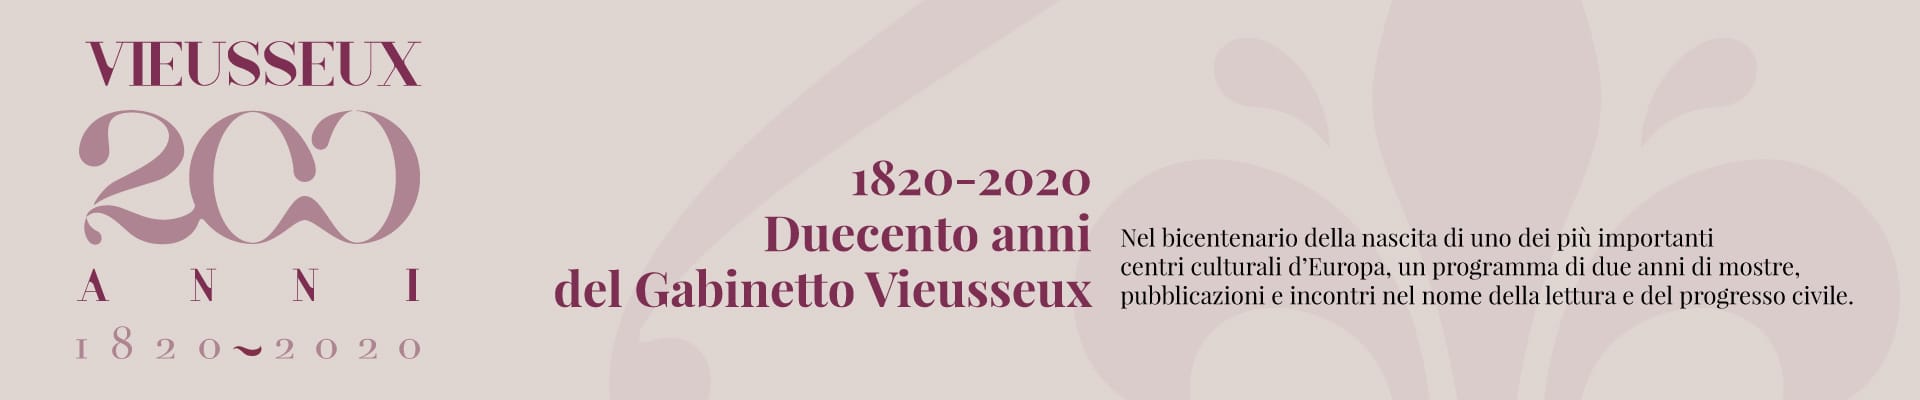 Gabinetto Vieusseux: riprendono le attività e ripartono le celebrazioni per il bicentenario della fondazione